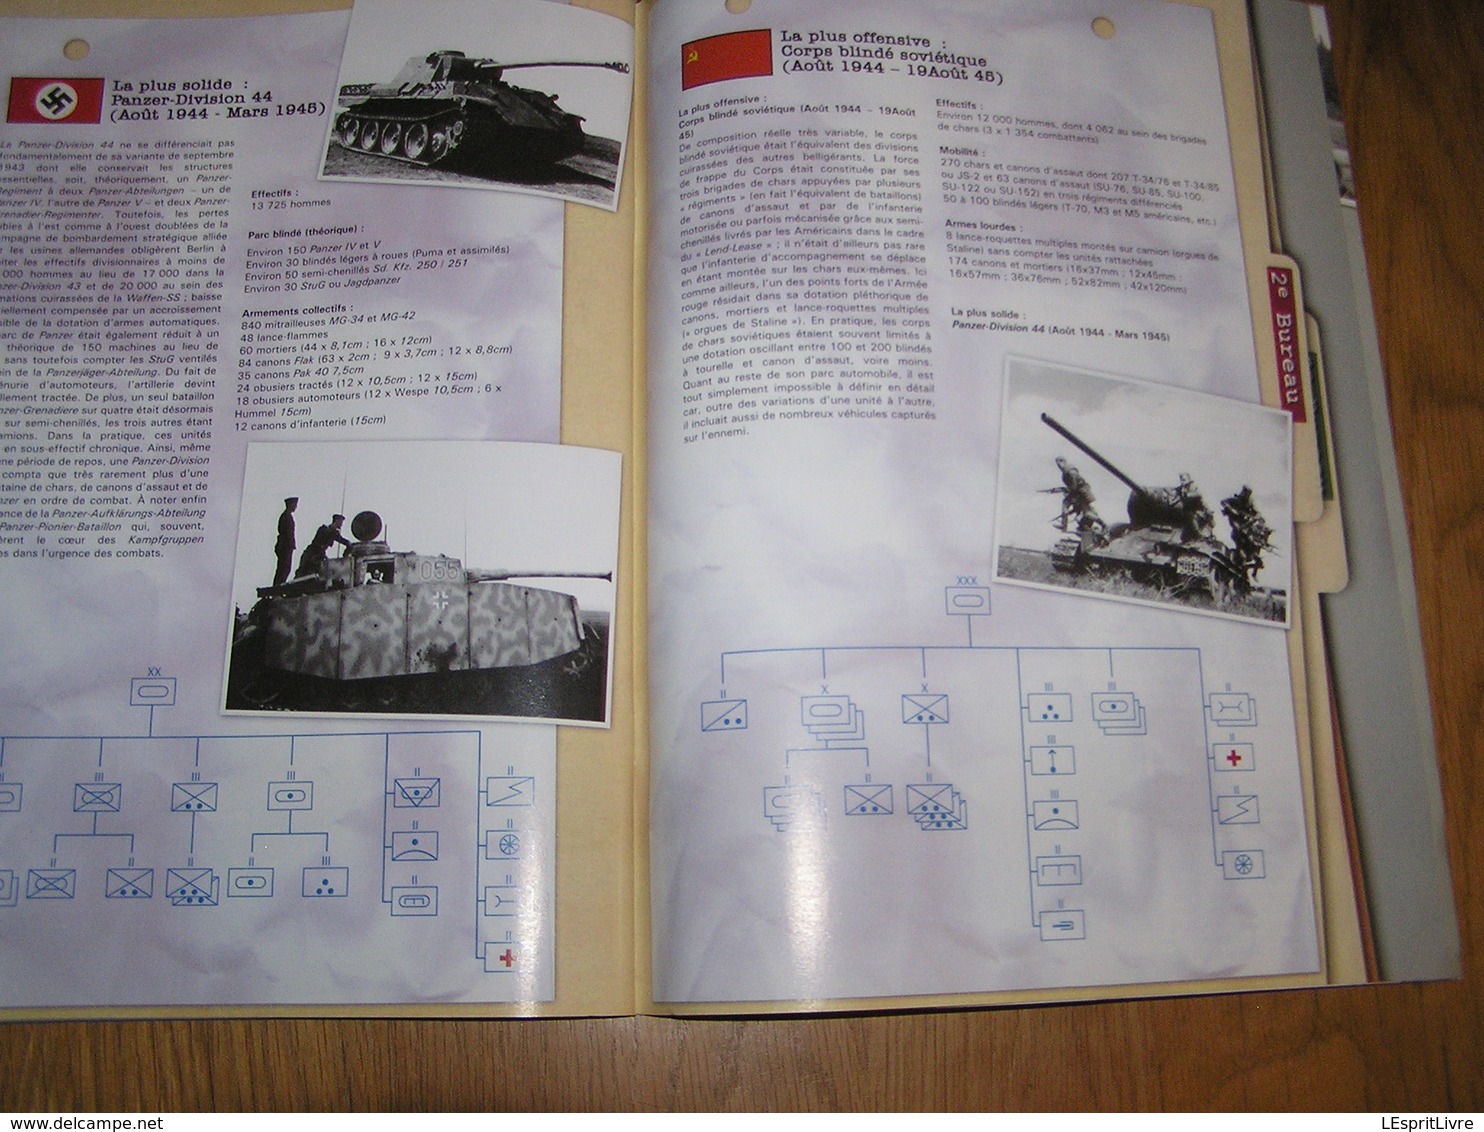 LIGNE DE FRONT N° 3 Guerre 40 45 Bataille du Pacifique Japon US Iwo Jima Histoire de la Waffen SS Argentine Gran Chaco